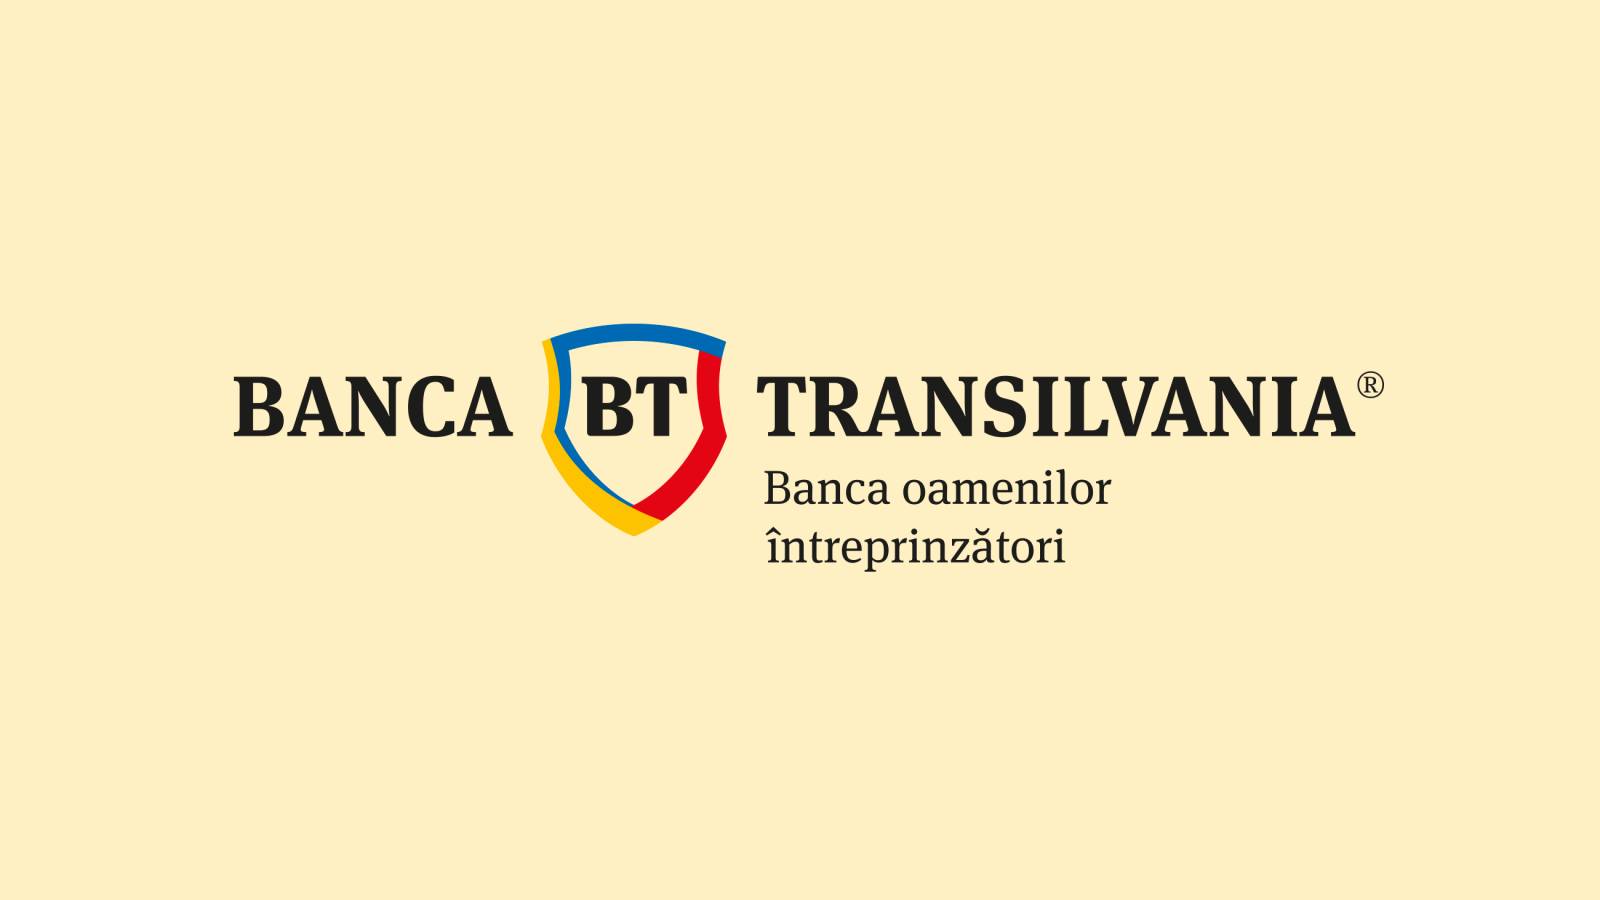 BANCA Transilvania Oficiale Masuri IMPORTANTE Dispuse Clientii Romania